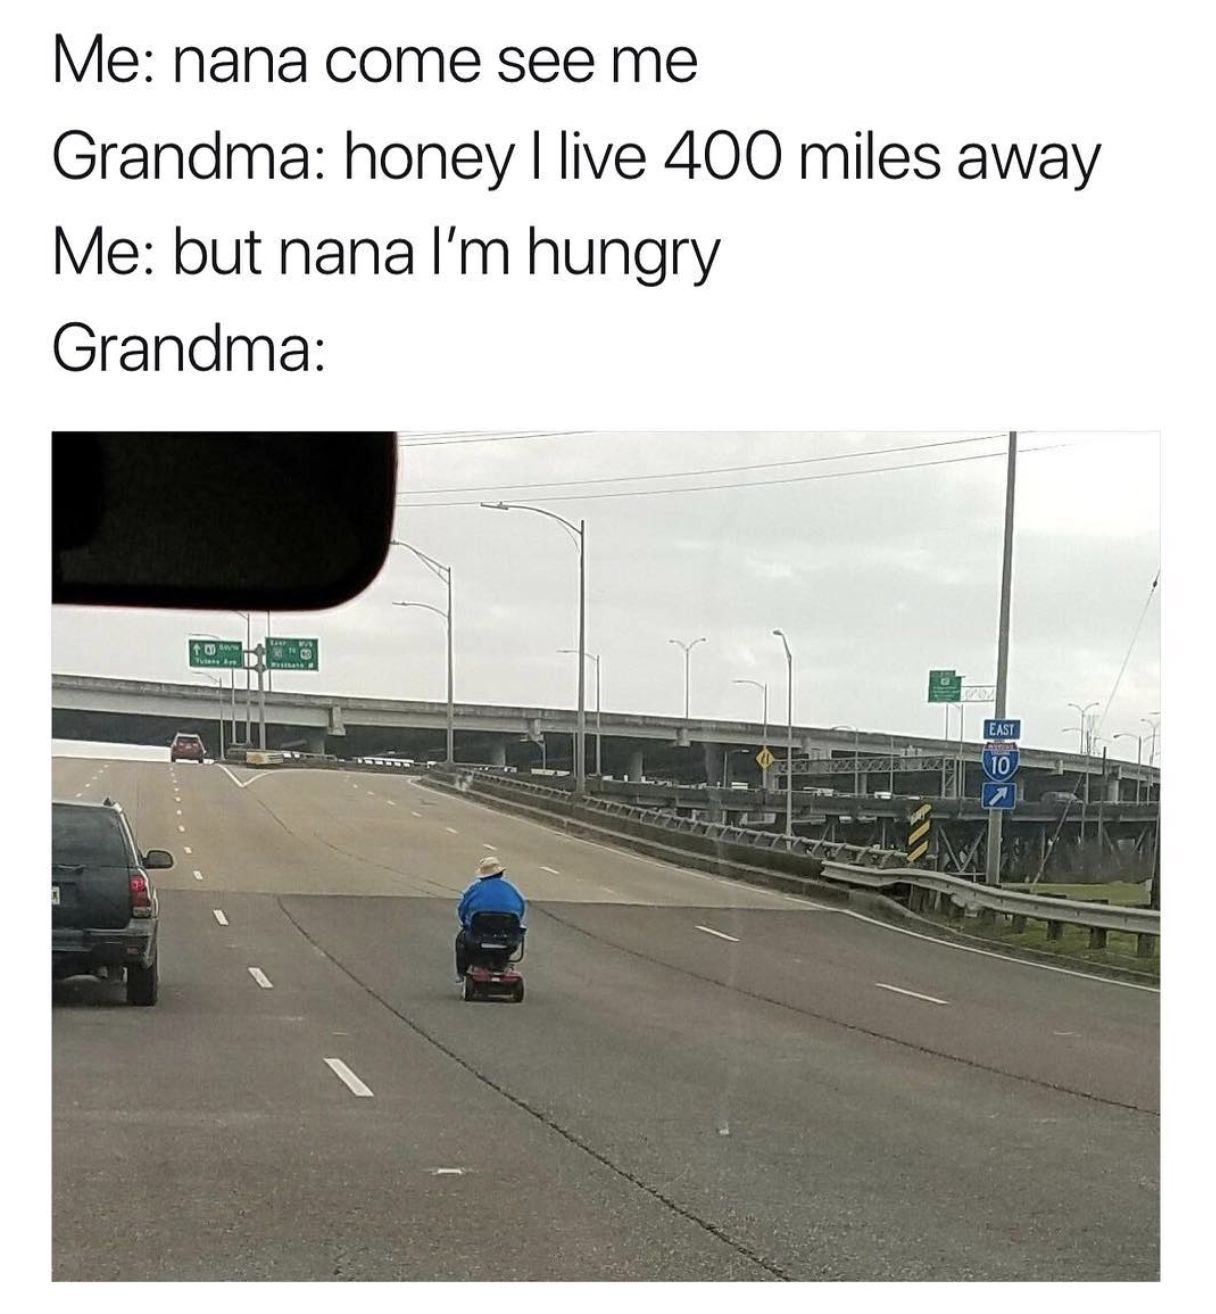 grandma i m hungry meme - Me nana come see me Grandma honey I live 400 miles away Me but nana I'm hungry Grandma Al